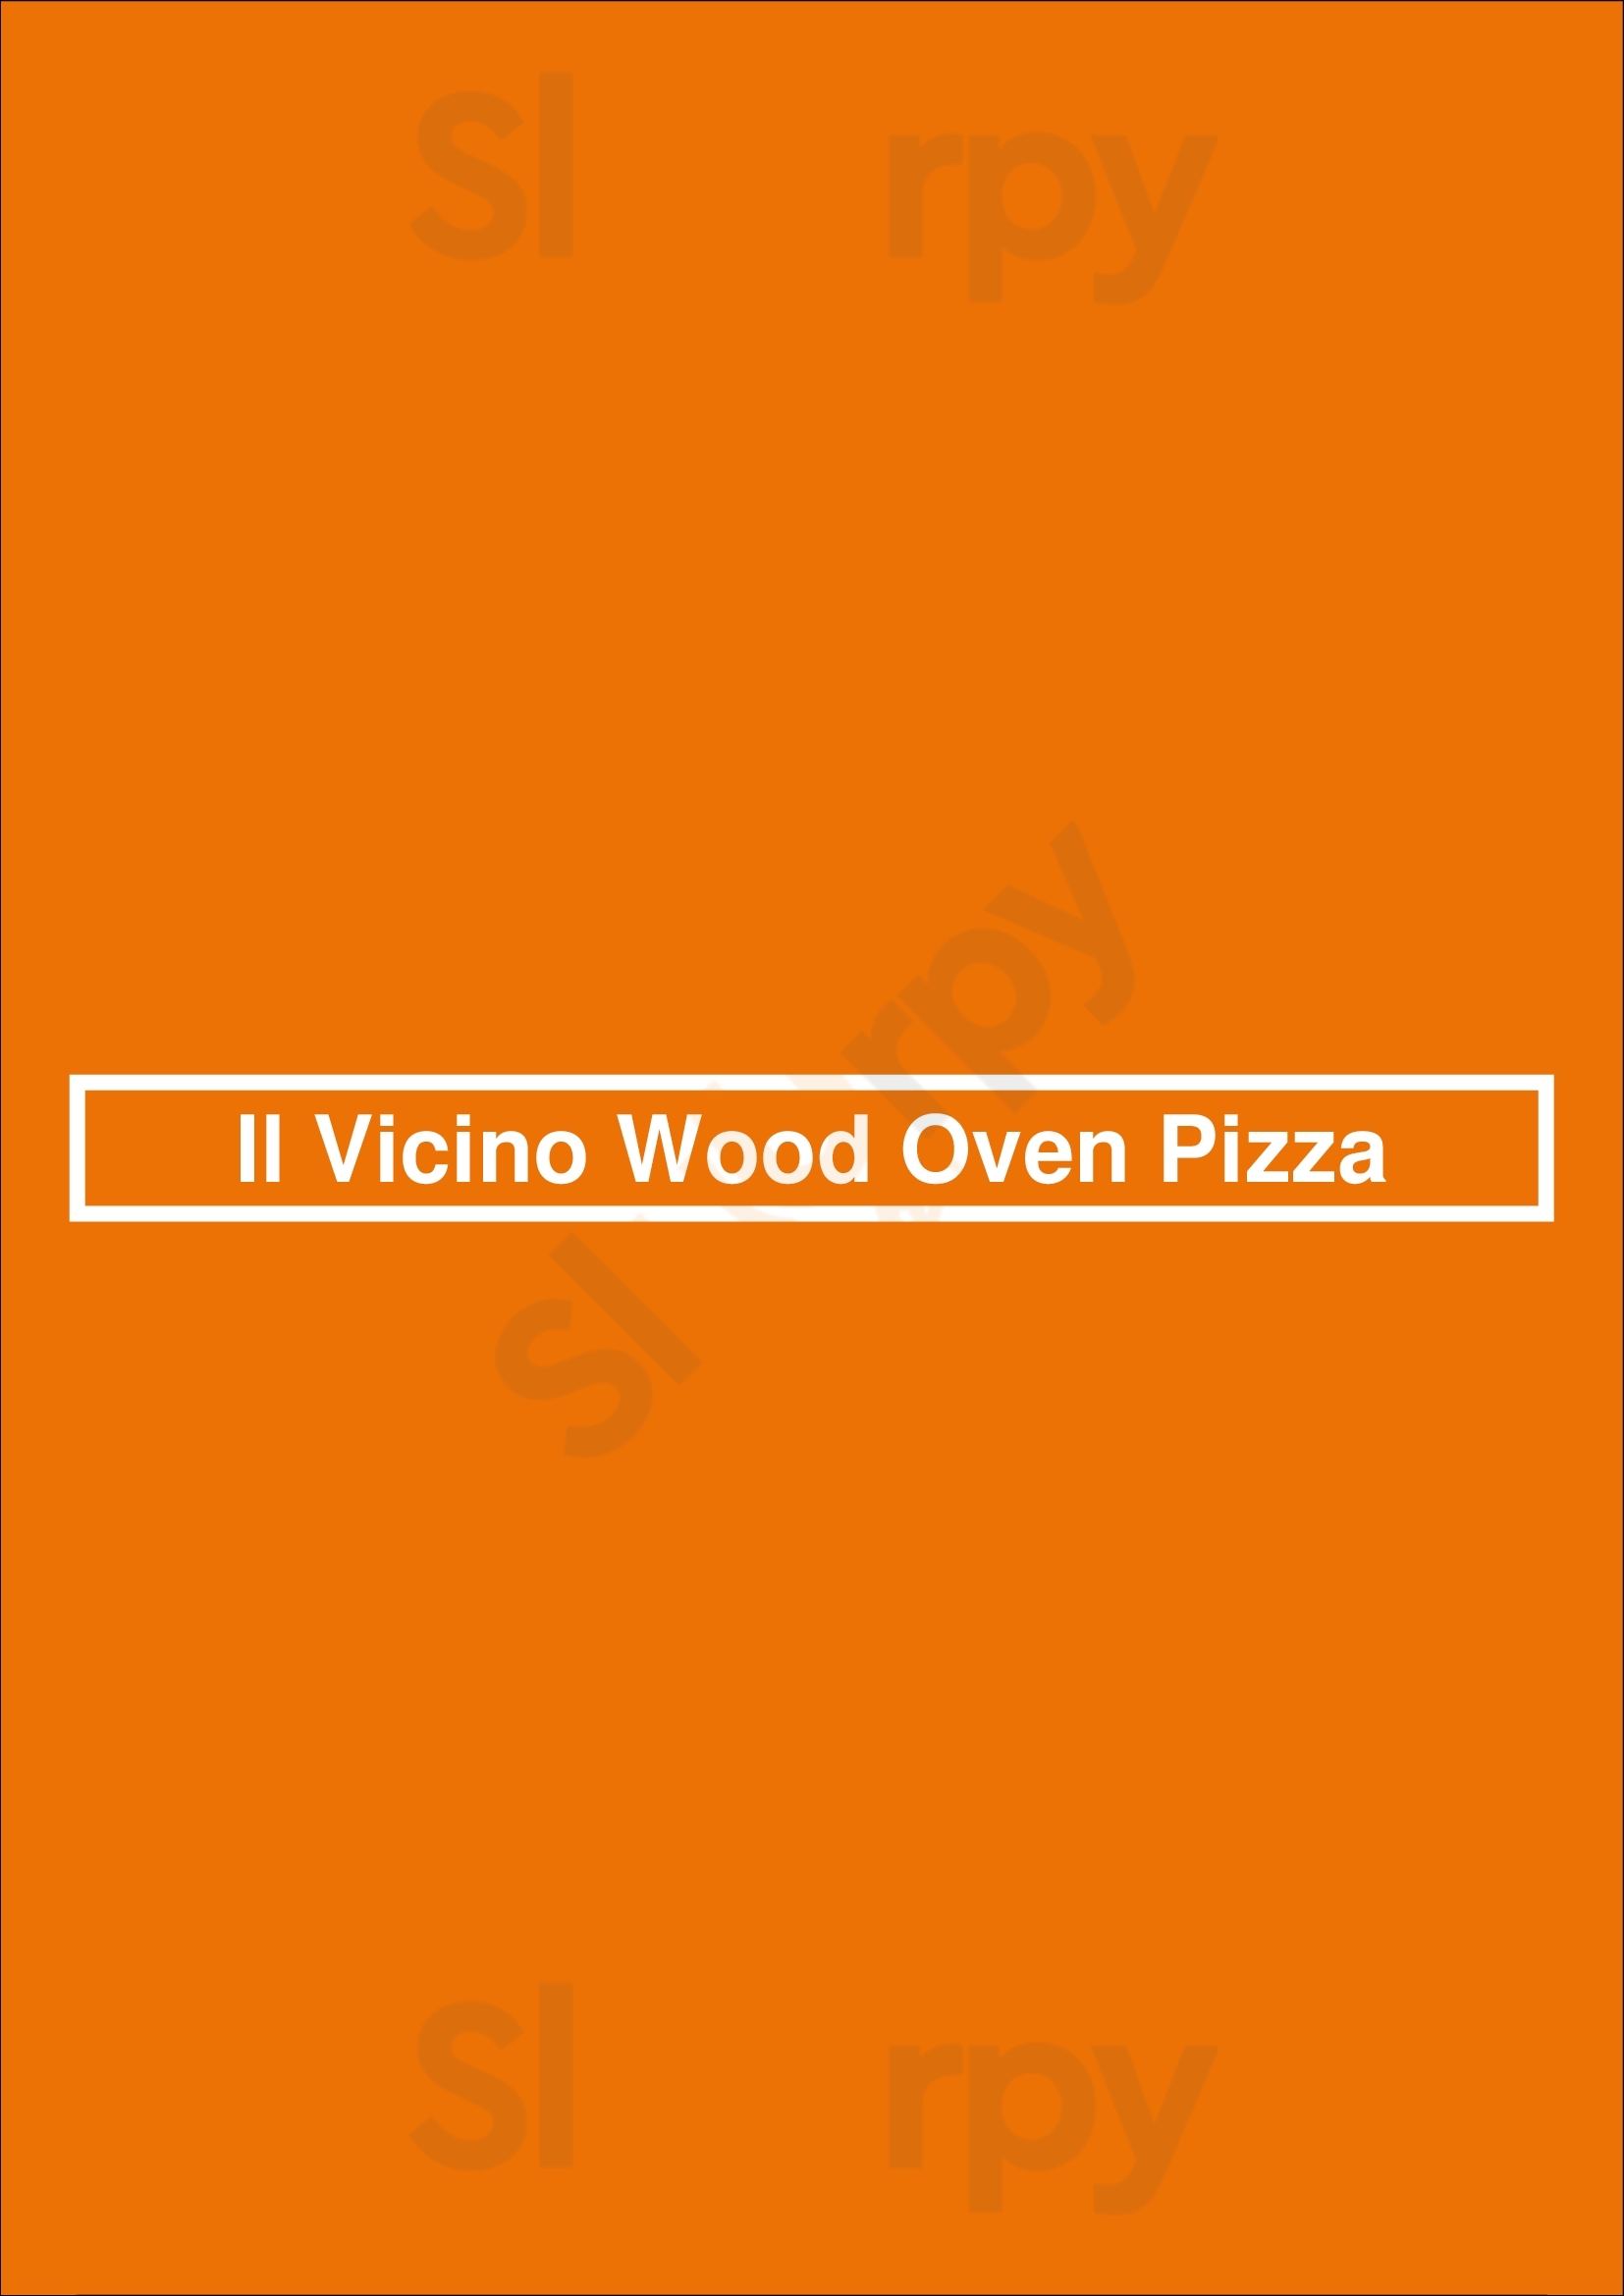 Il Vicino Wood Oven Pizza Albuquerque Menu - 1